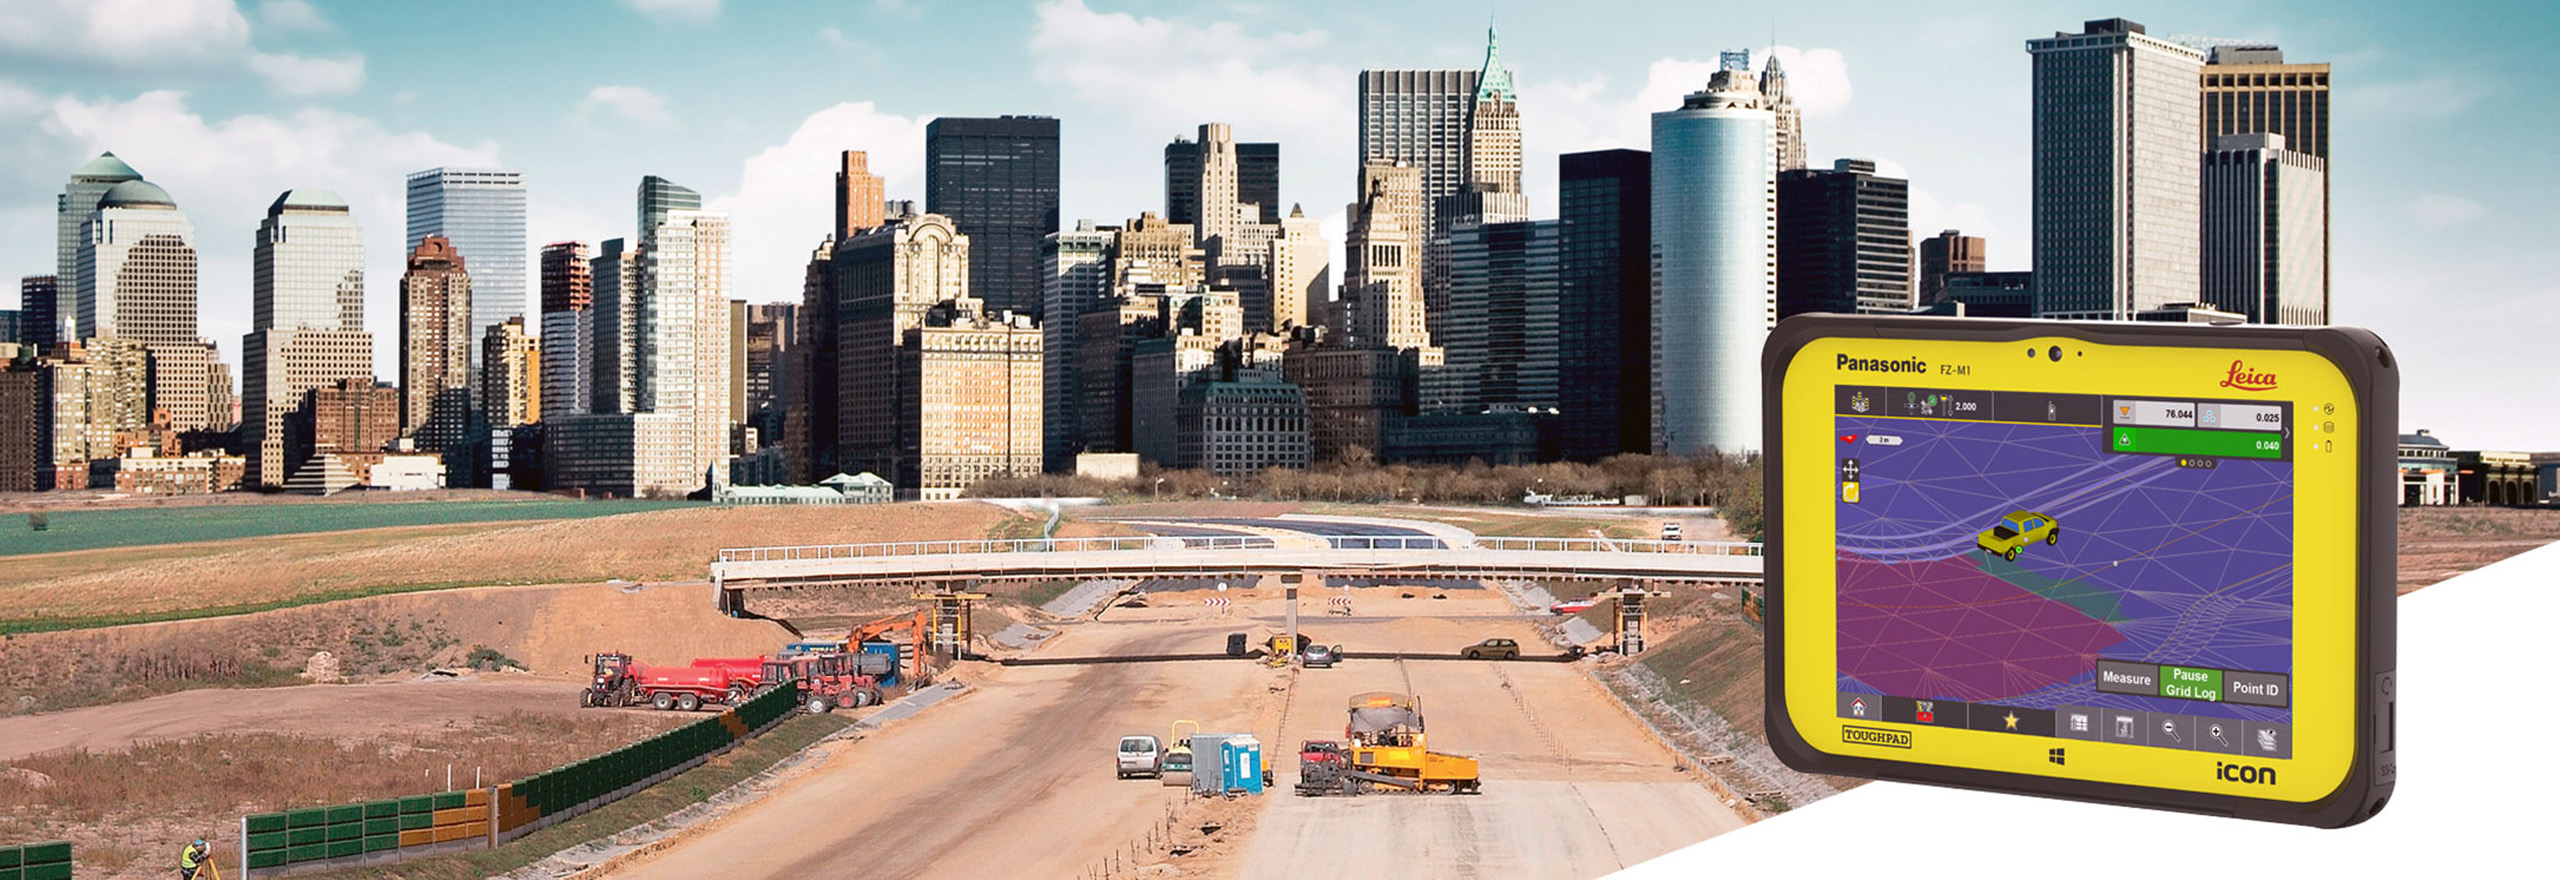  Une grande autoroute s’étend dans une grande ville en construction avec une photo du logiciel Leica iCON site en bas à droite